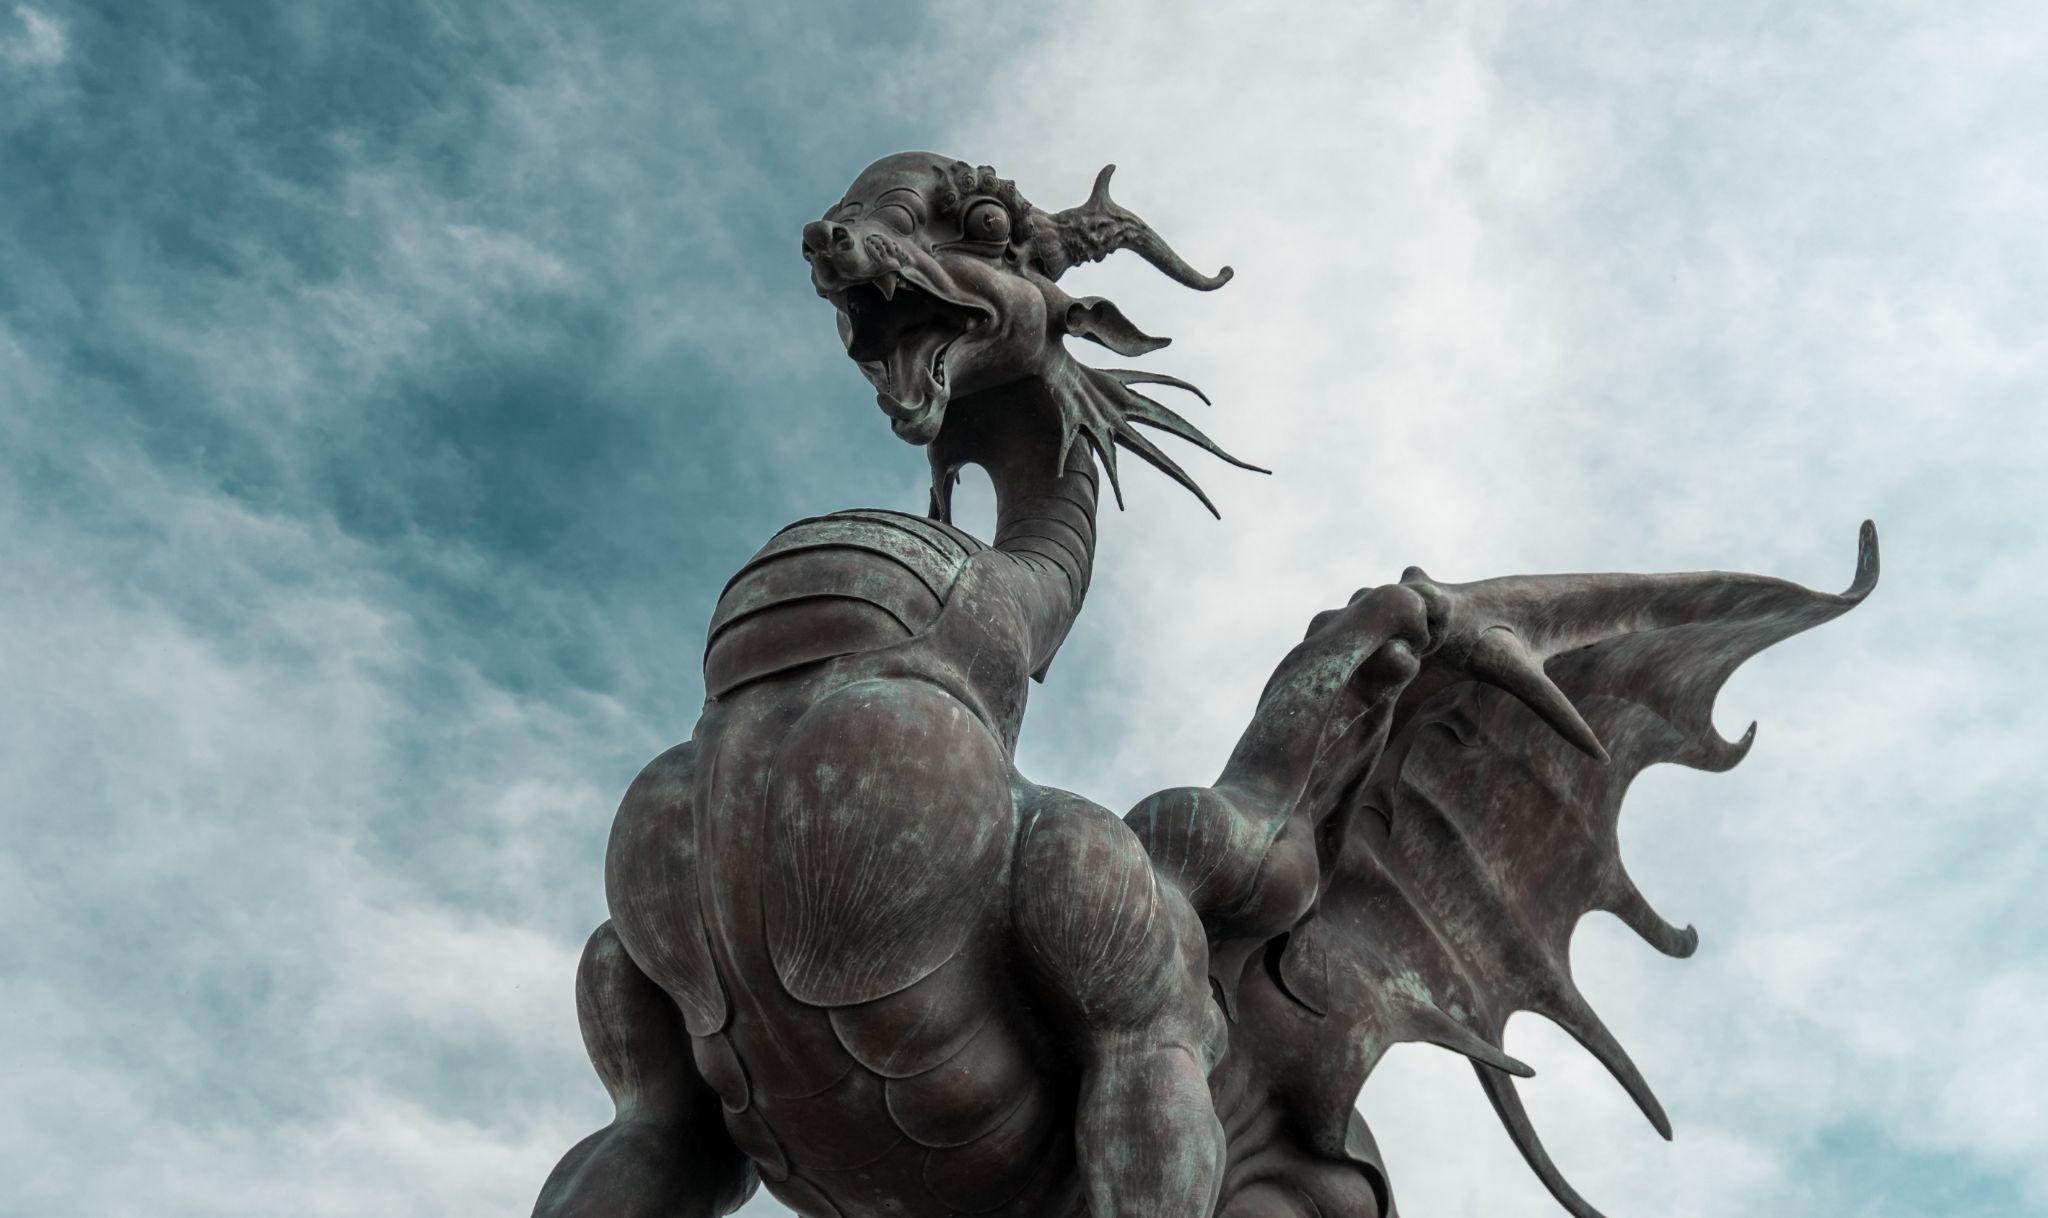 A dragon statue